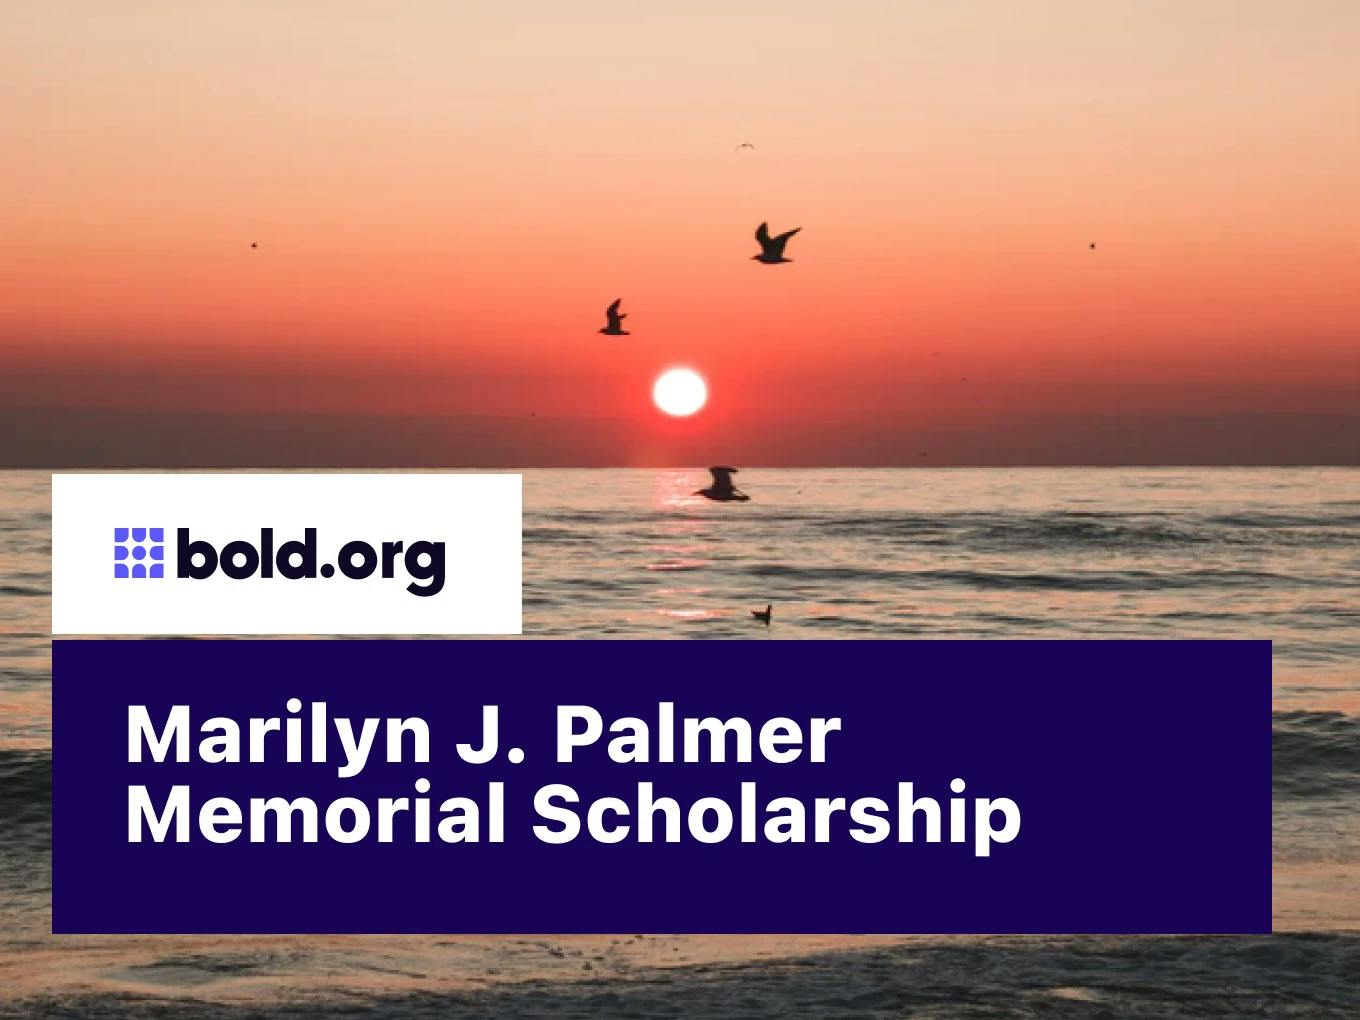 Marilyn J. Palmer Memorial